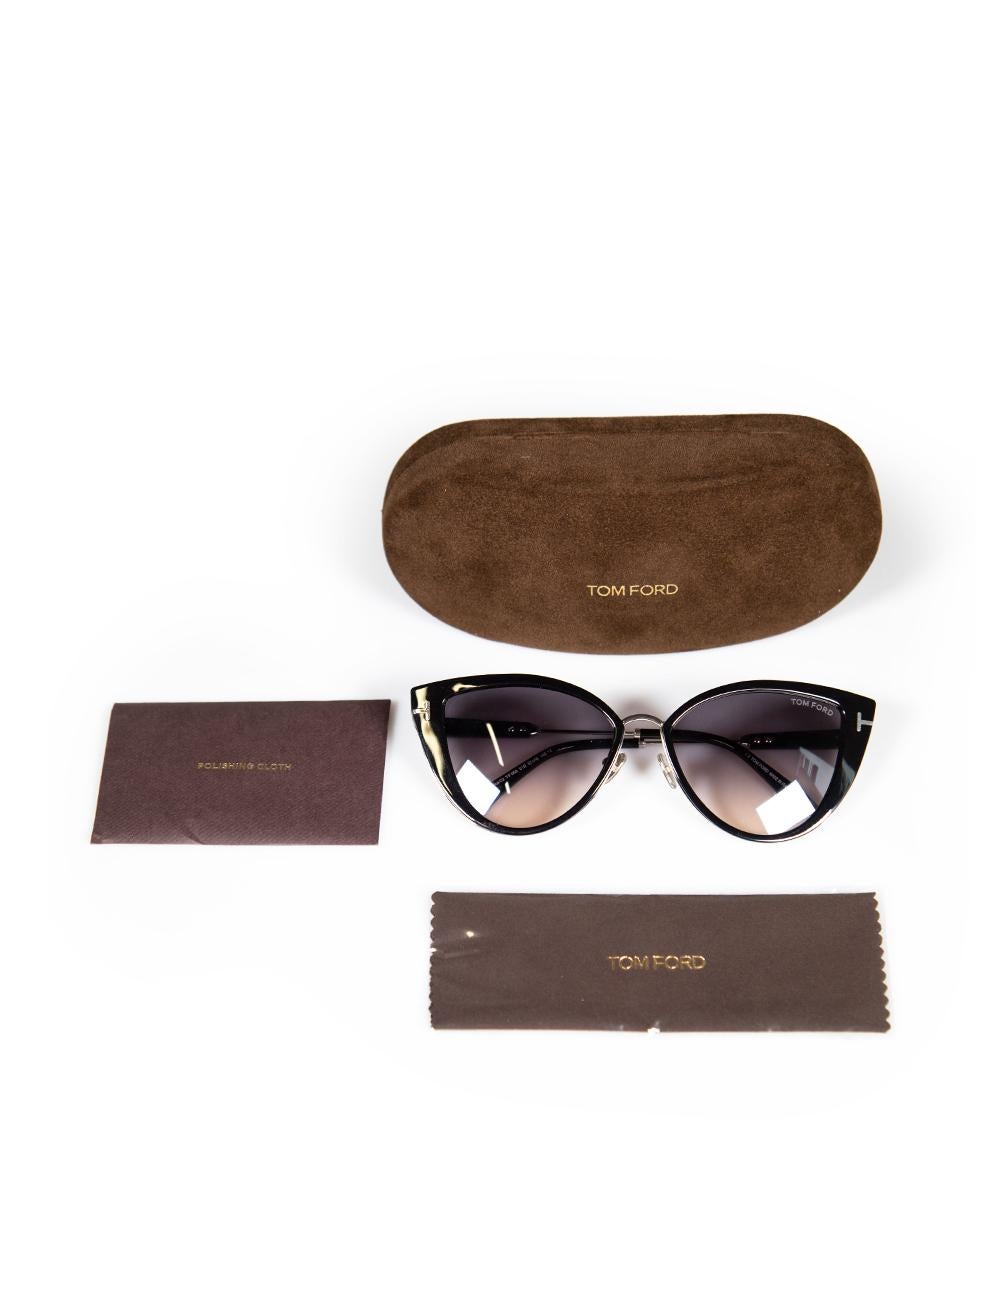 Tom Ford Shiny Black Anjelica Sunglasses For Sale 4